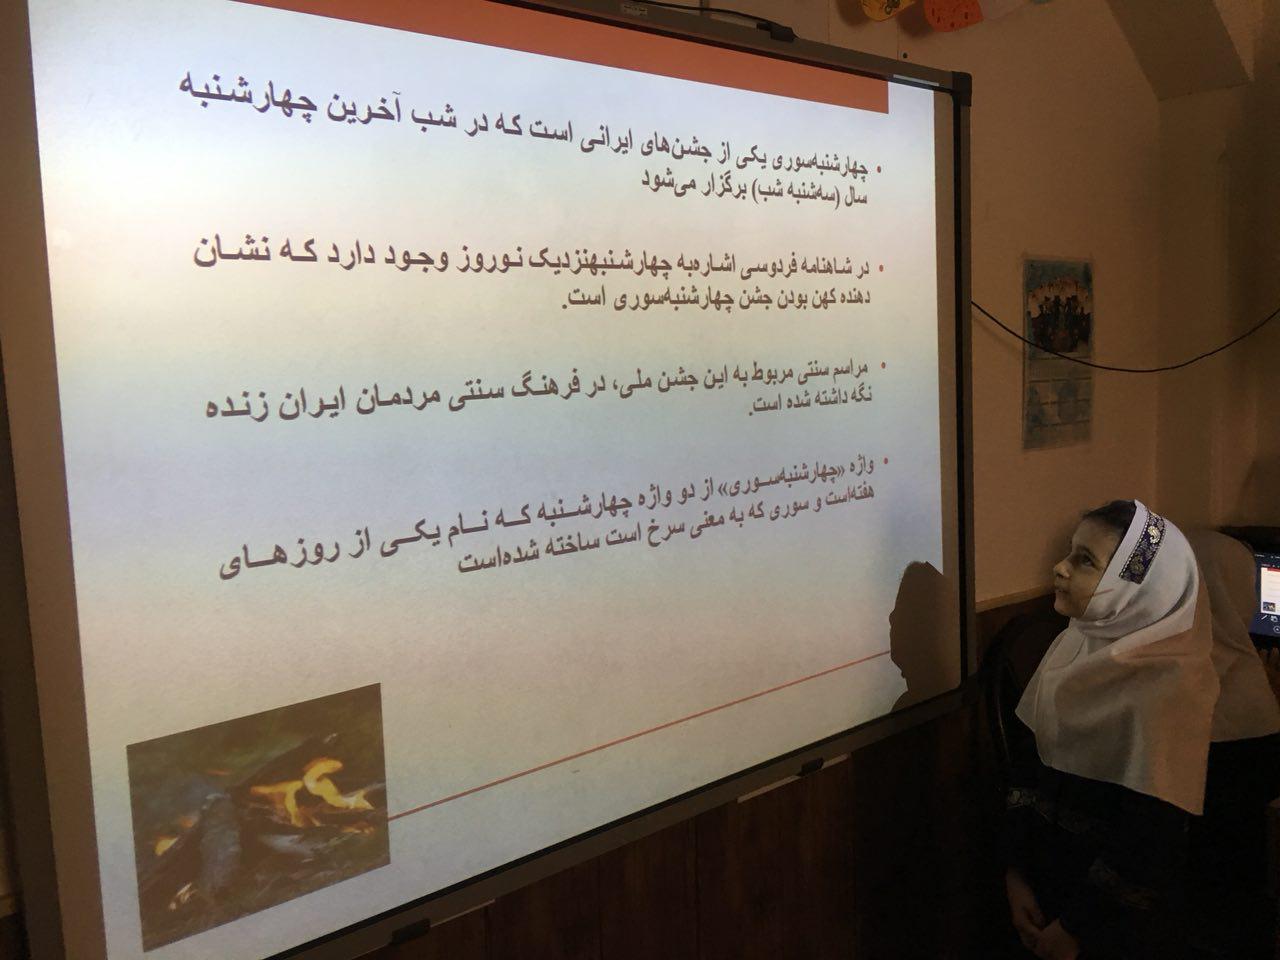 کنفرانس پرنیان صحرایی در مورد آداب و رسوم چهارشنبه سوری